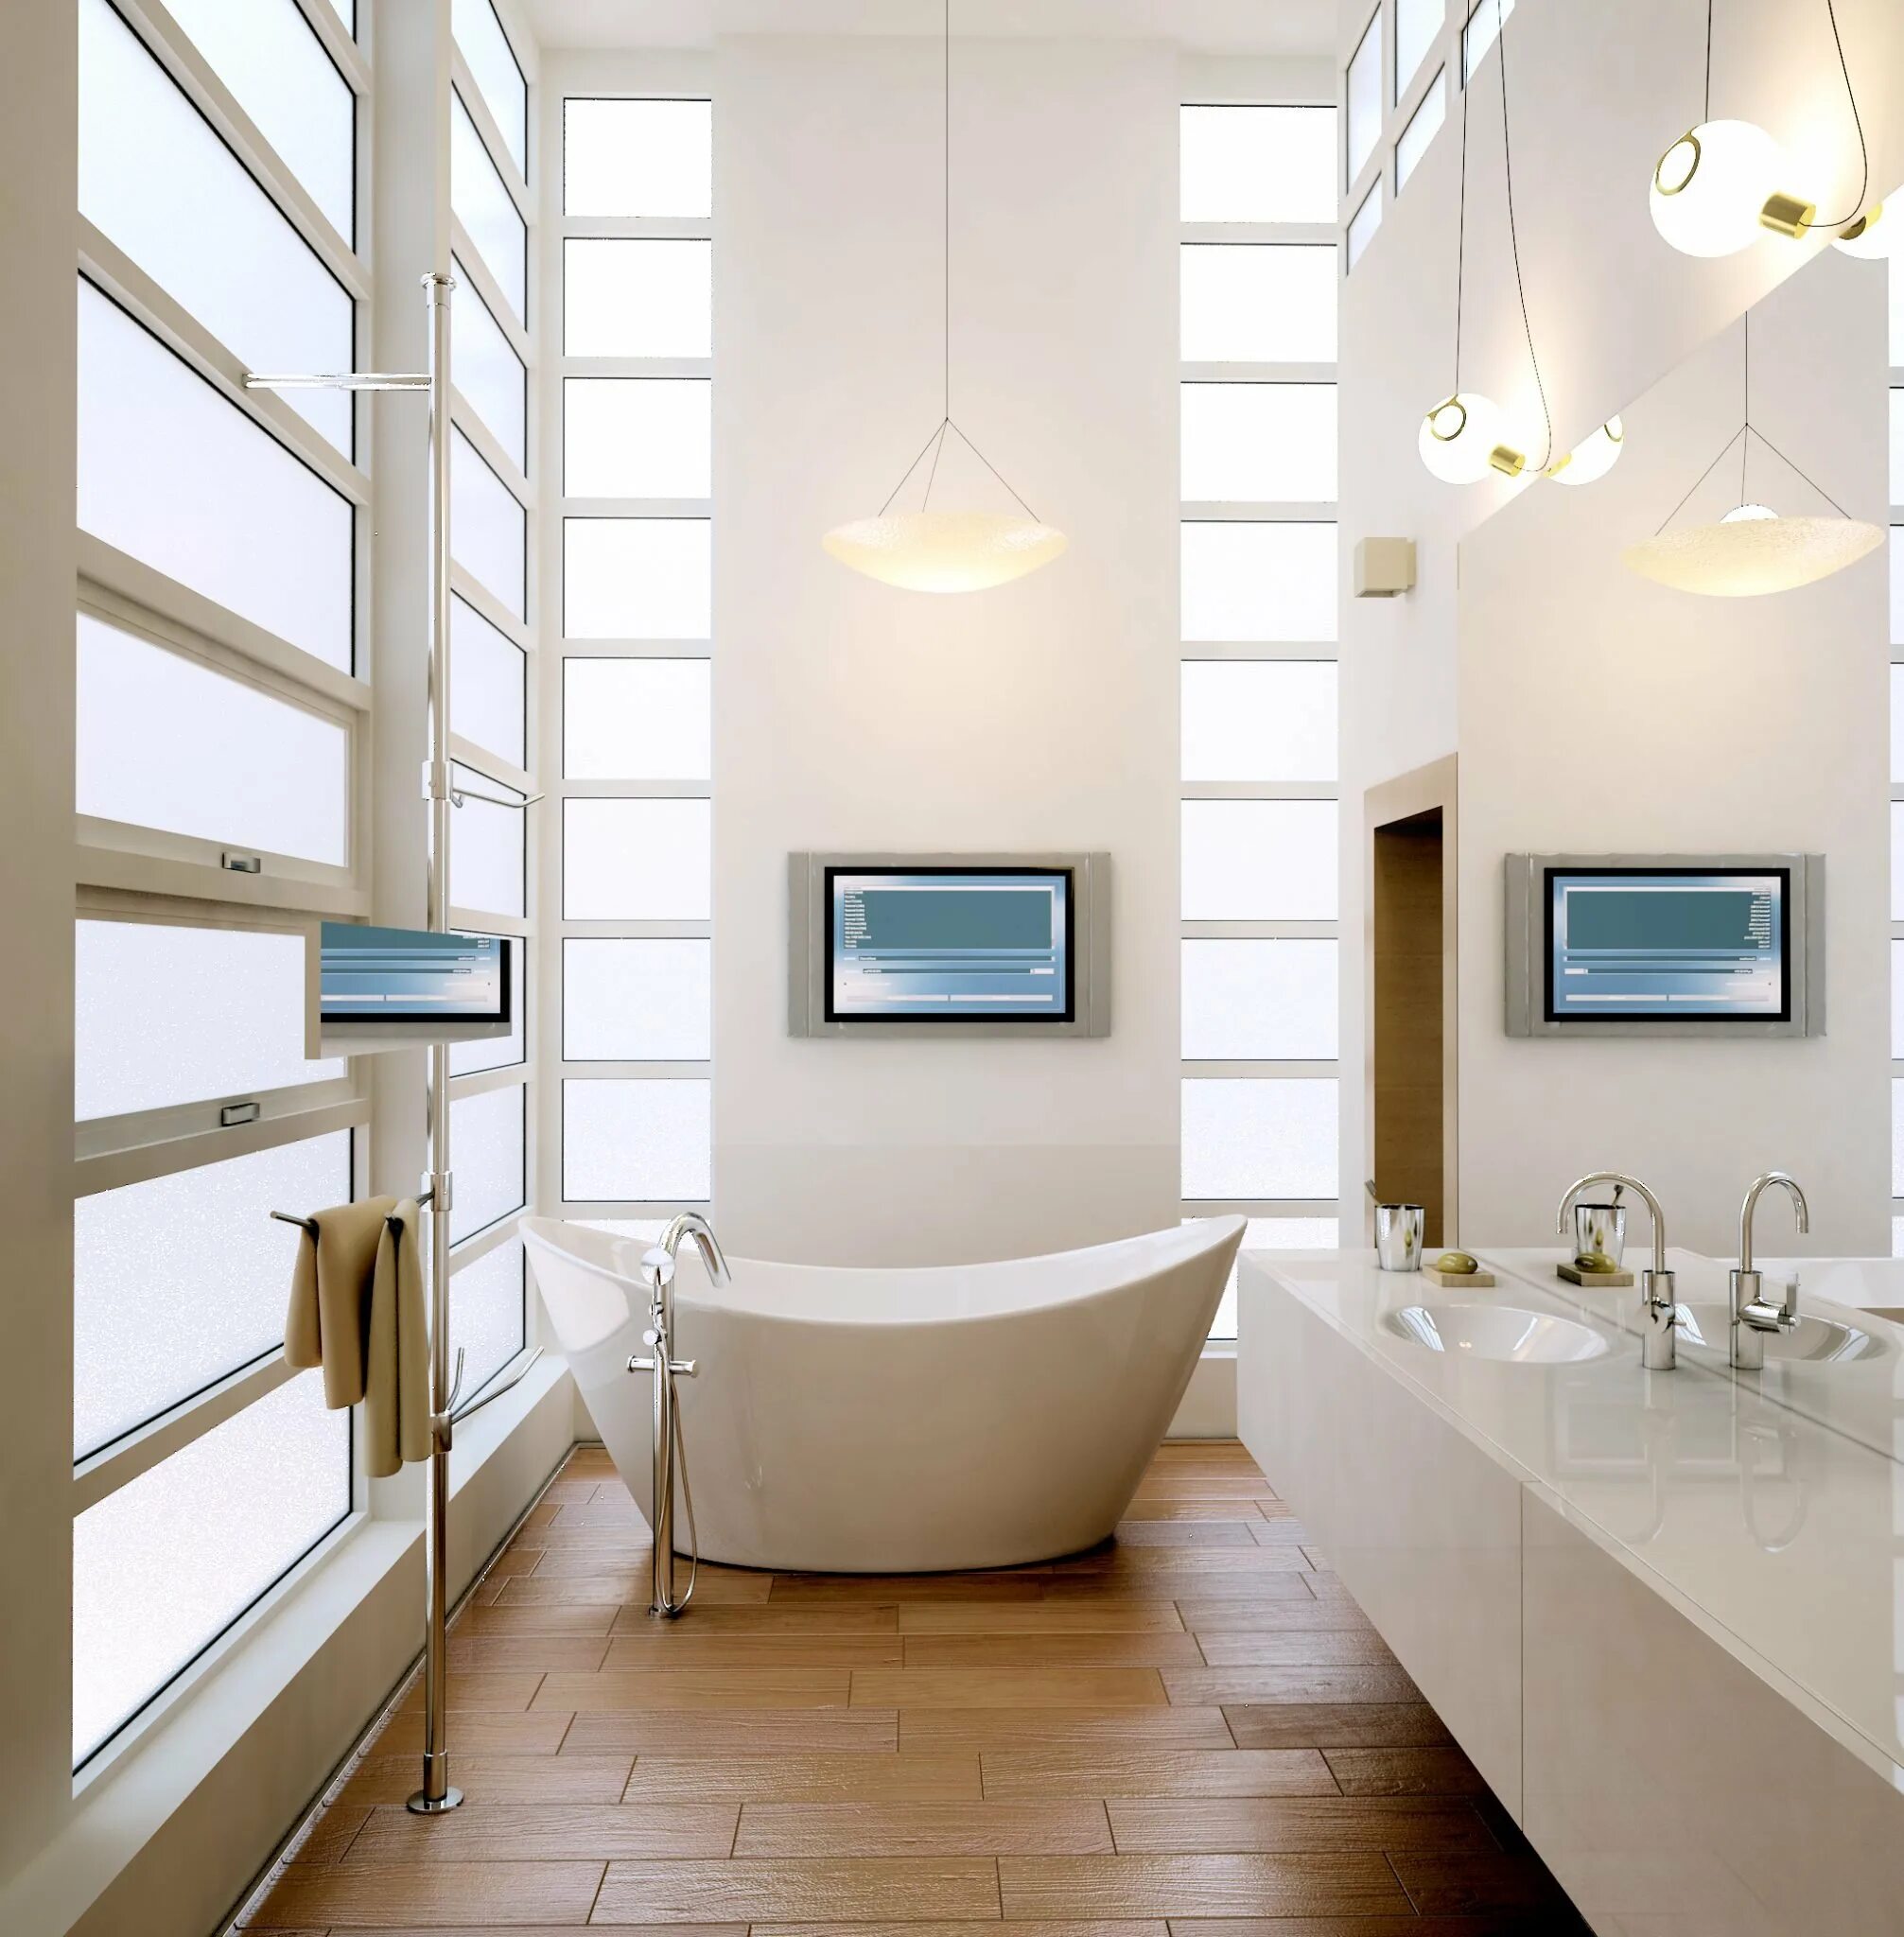 Включи свет в ванне. Освещение в ванной. Светильники для ванной комнаты. Светильники в ванной в интерьере. Освещение в ванной дизайнерские решения.